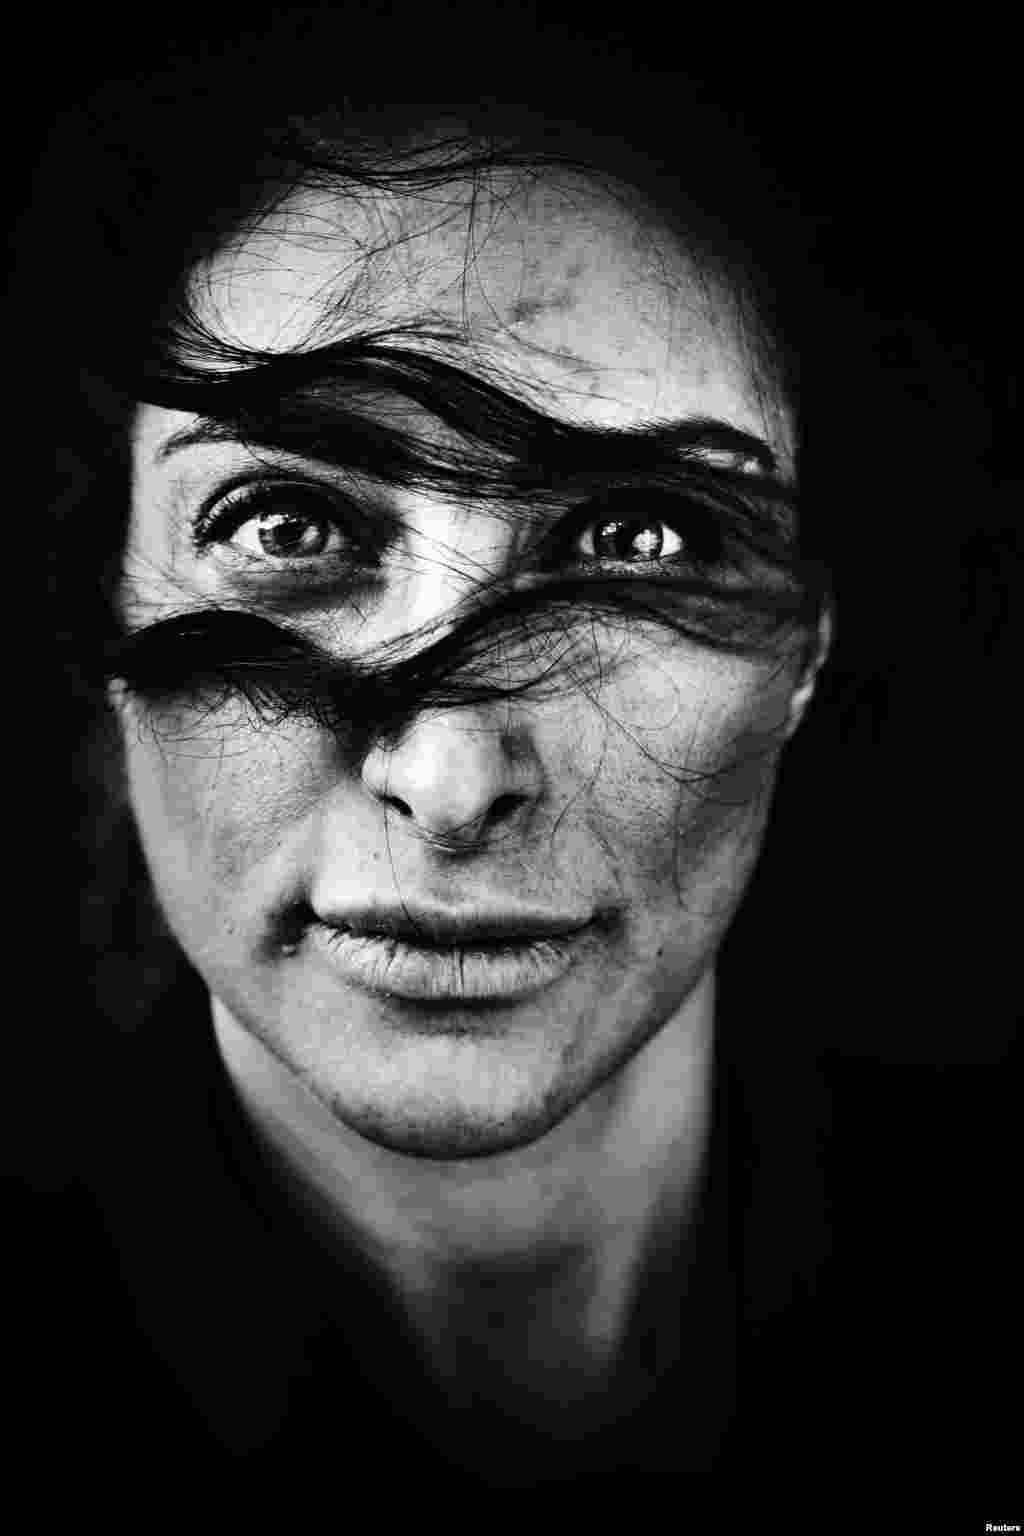 ГIажарийн махкахь йина йолу Данера актриса МехIрабан Мелика. Портретийн категорехь совгIат даьккхинчу суртан автор ву Посселт Ларке, Дани-пачхьалкх. 